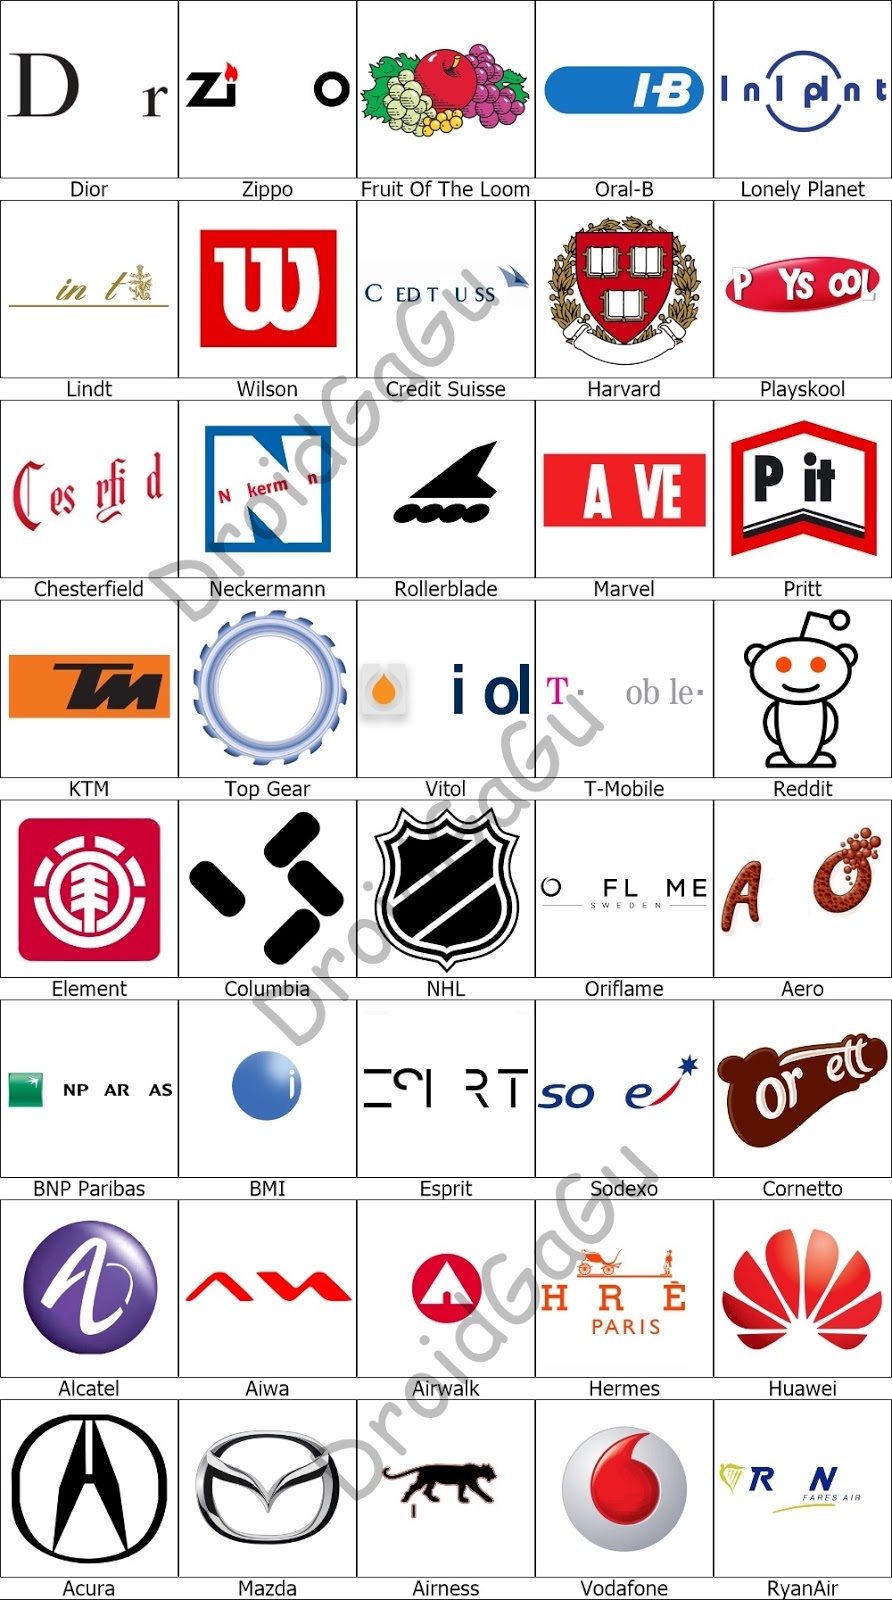 picture quiz logos level 6